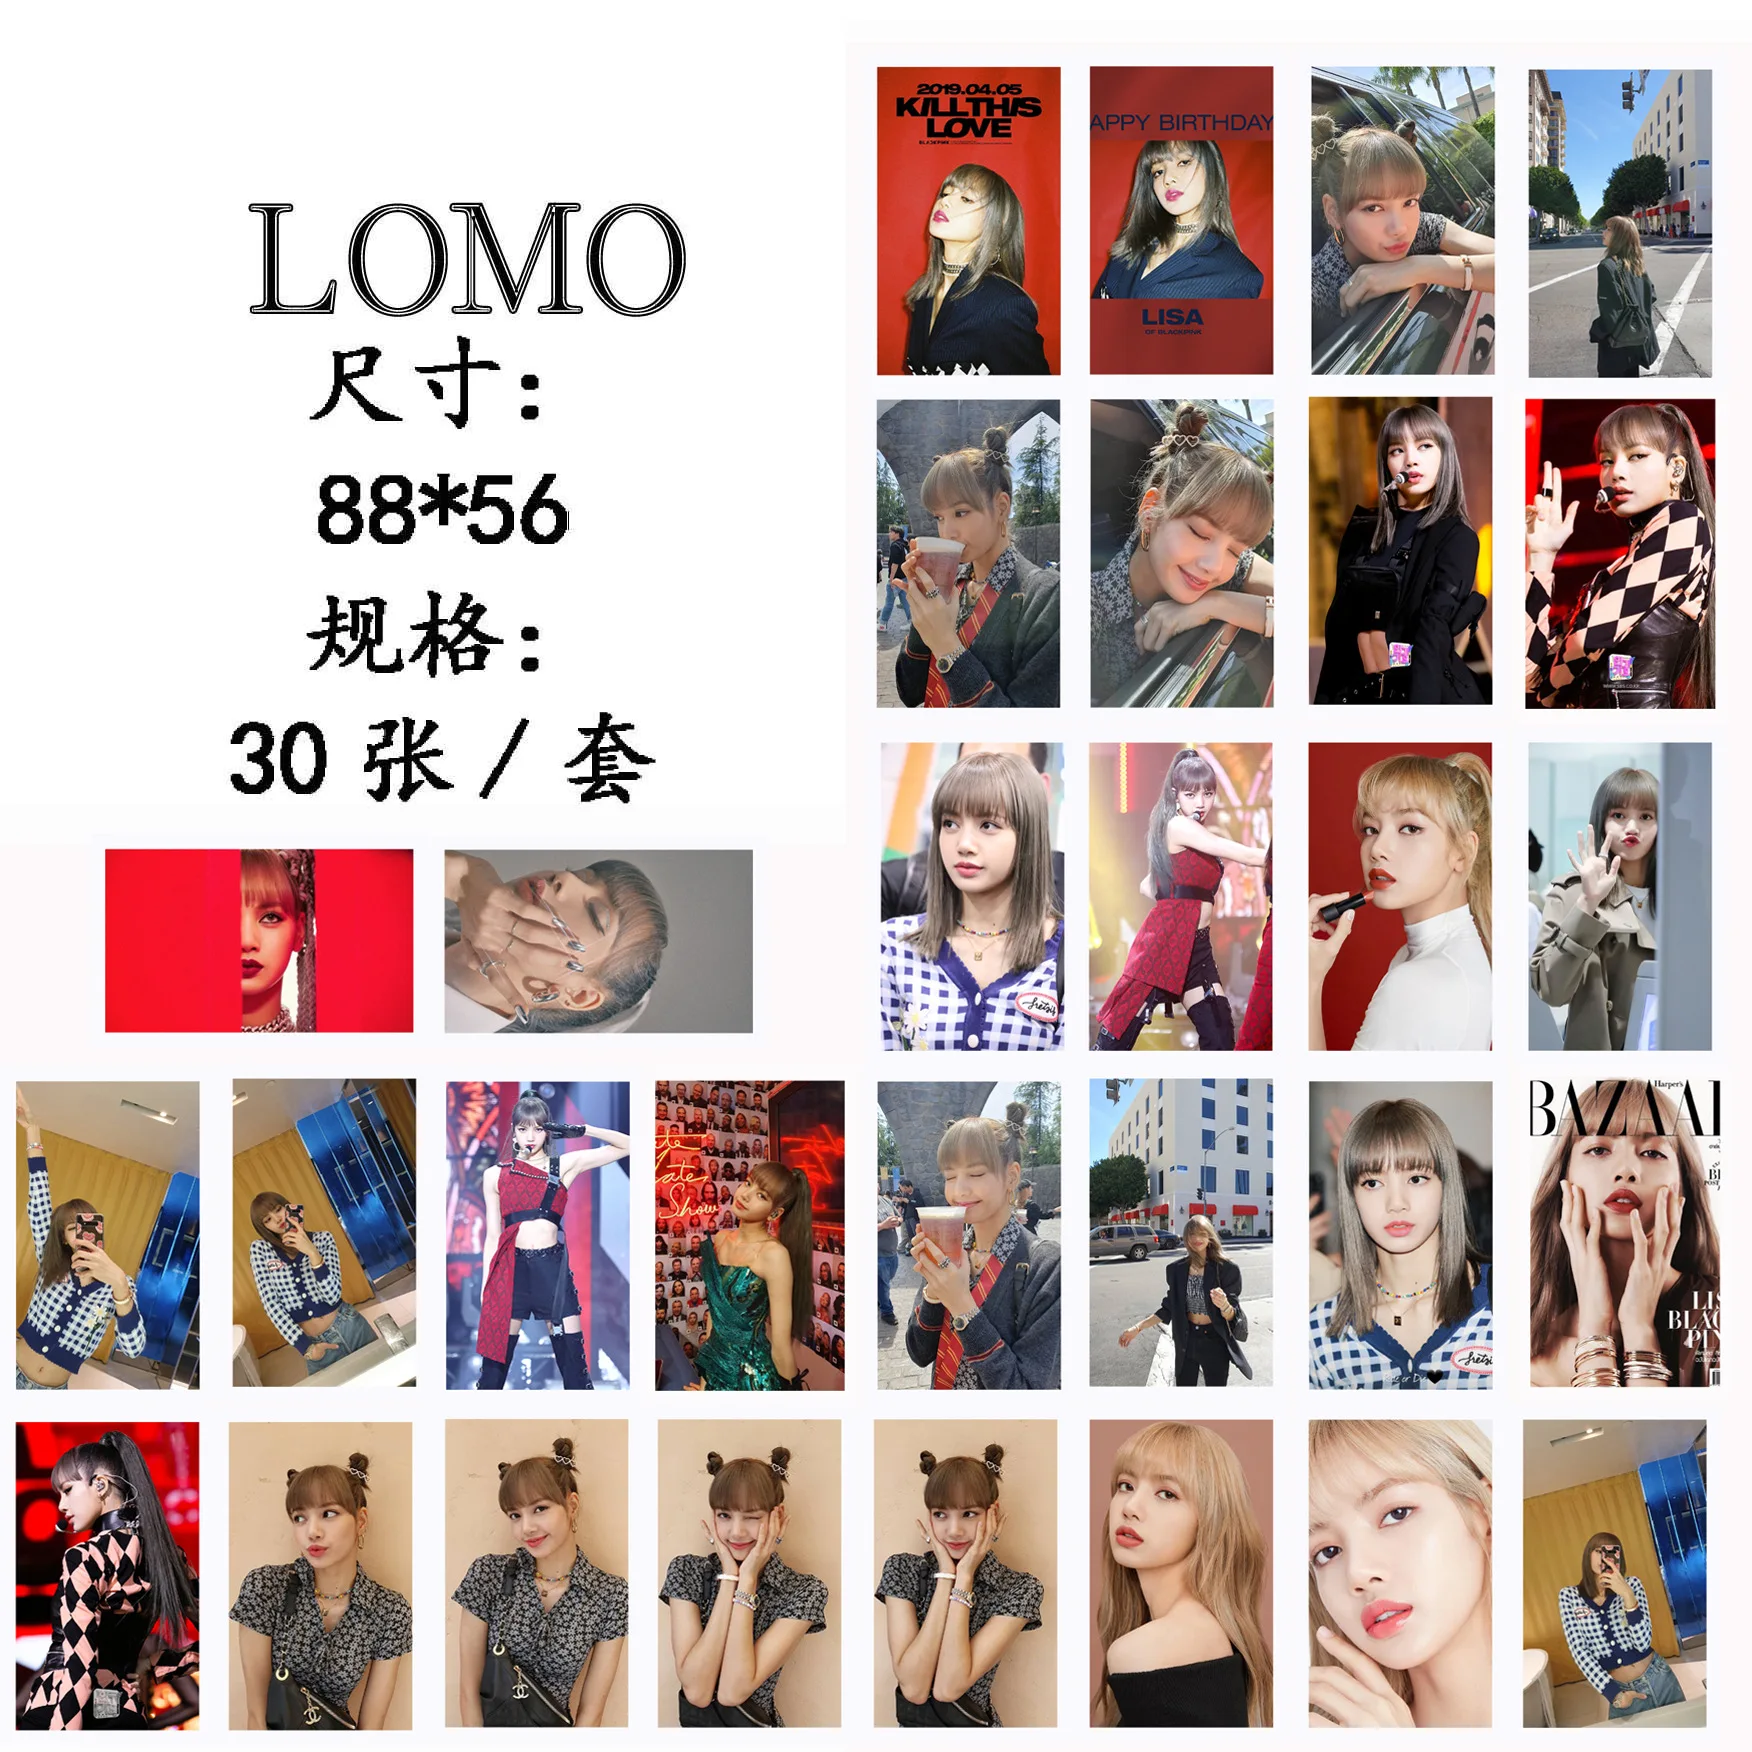 30 шт./лот/партия Новый Корейский KPOP BLACKPINK Girls Kill This Love 2019 новый альбом Фотокарта ПВХ карты самодельные LOMO Card Photocard